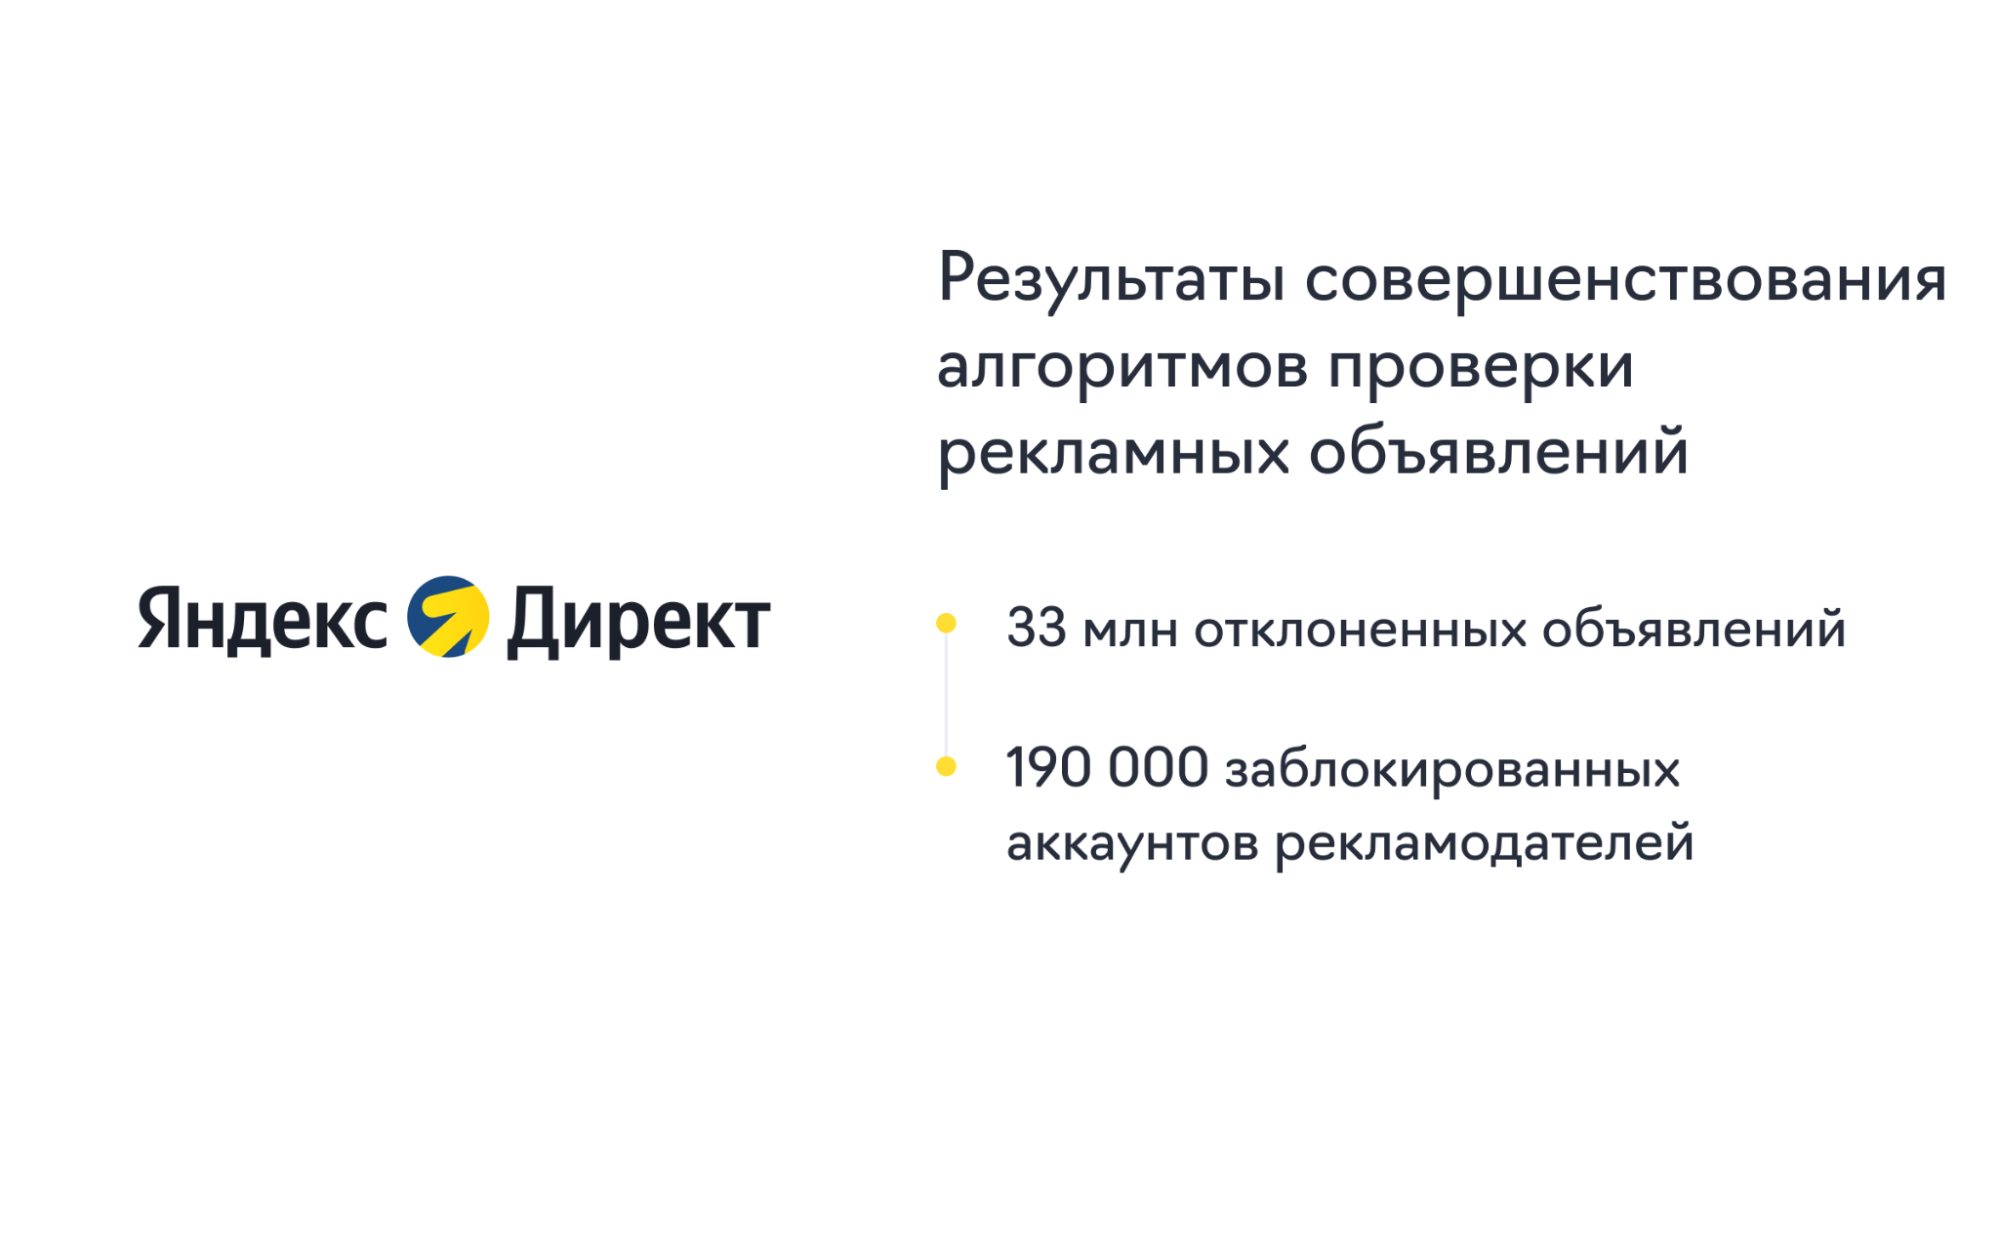 Блокировка Яндексом 190 000 аккаунтов рекламодателей 